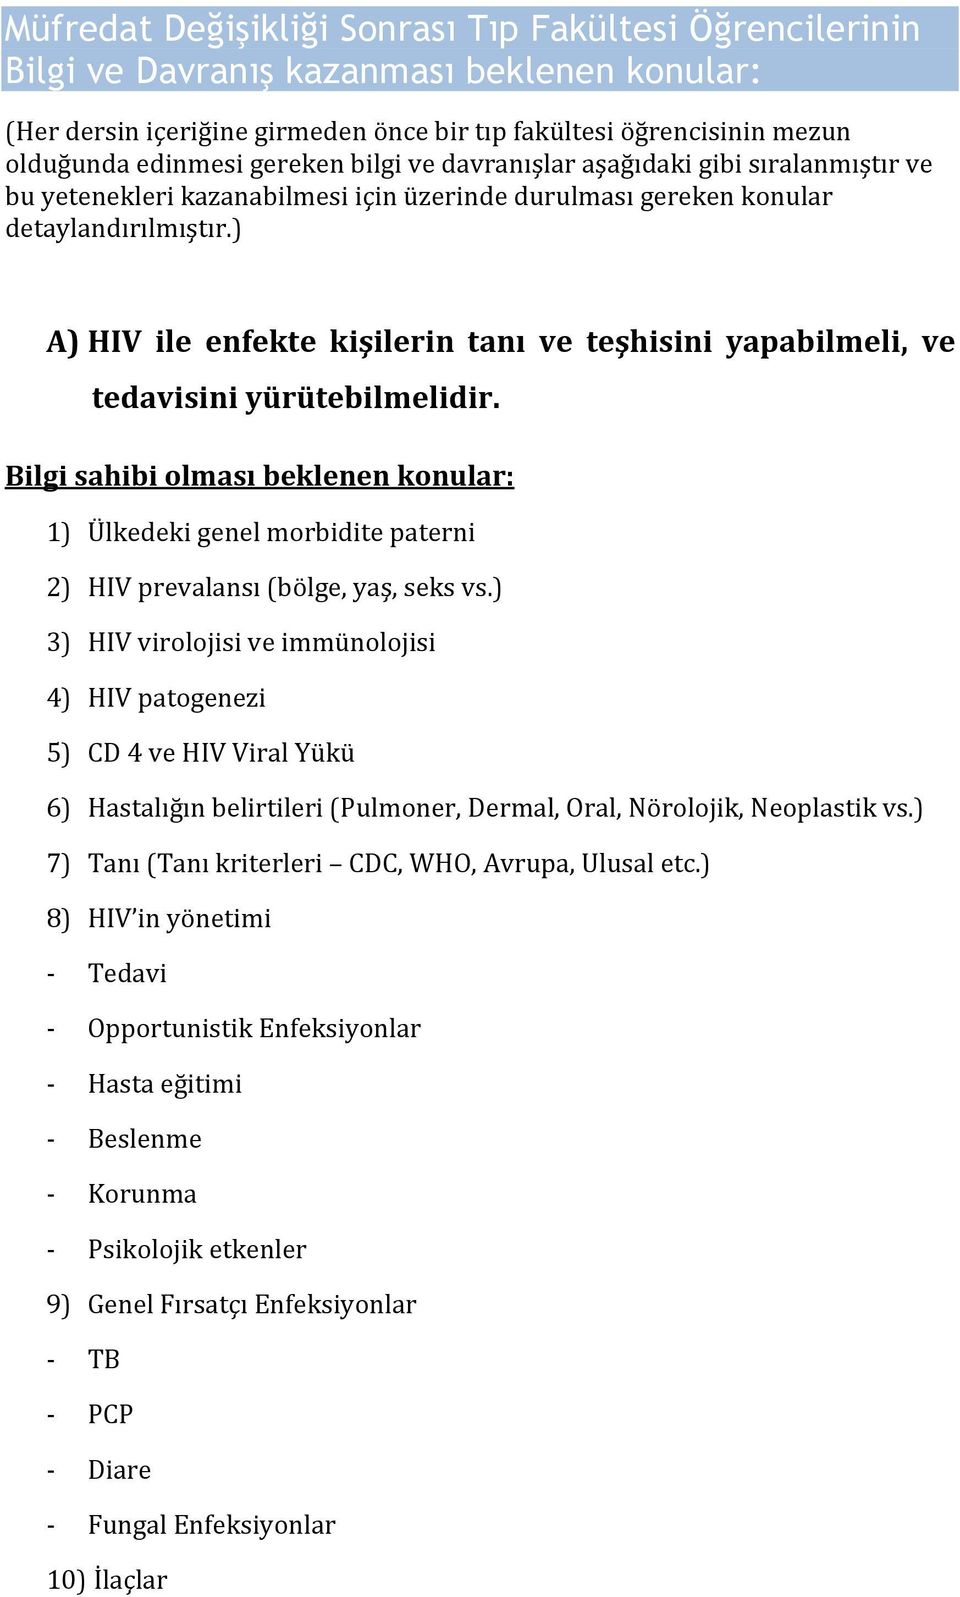 ) A) HIV ile enfekte kişilerin tanı ve teşhisini yapabilmeli, ve tedavisiniyürütebilmelidir. Bilgisahibiolmasıbeklenenkonular: 1) Ülkedekigenelmorbiditepaterni 2) HIVprevalansı(bölge,yaş,seksvs.